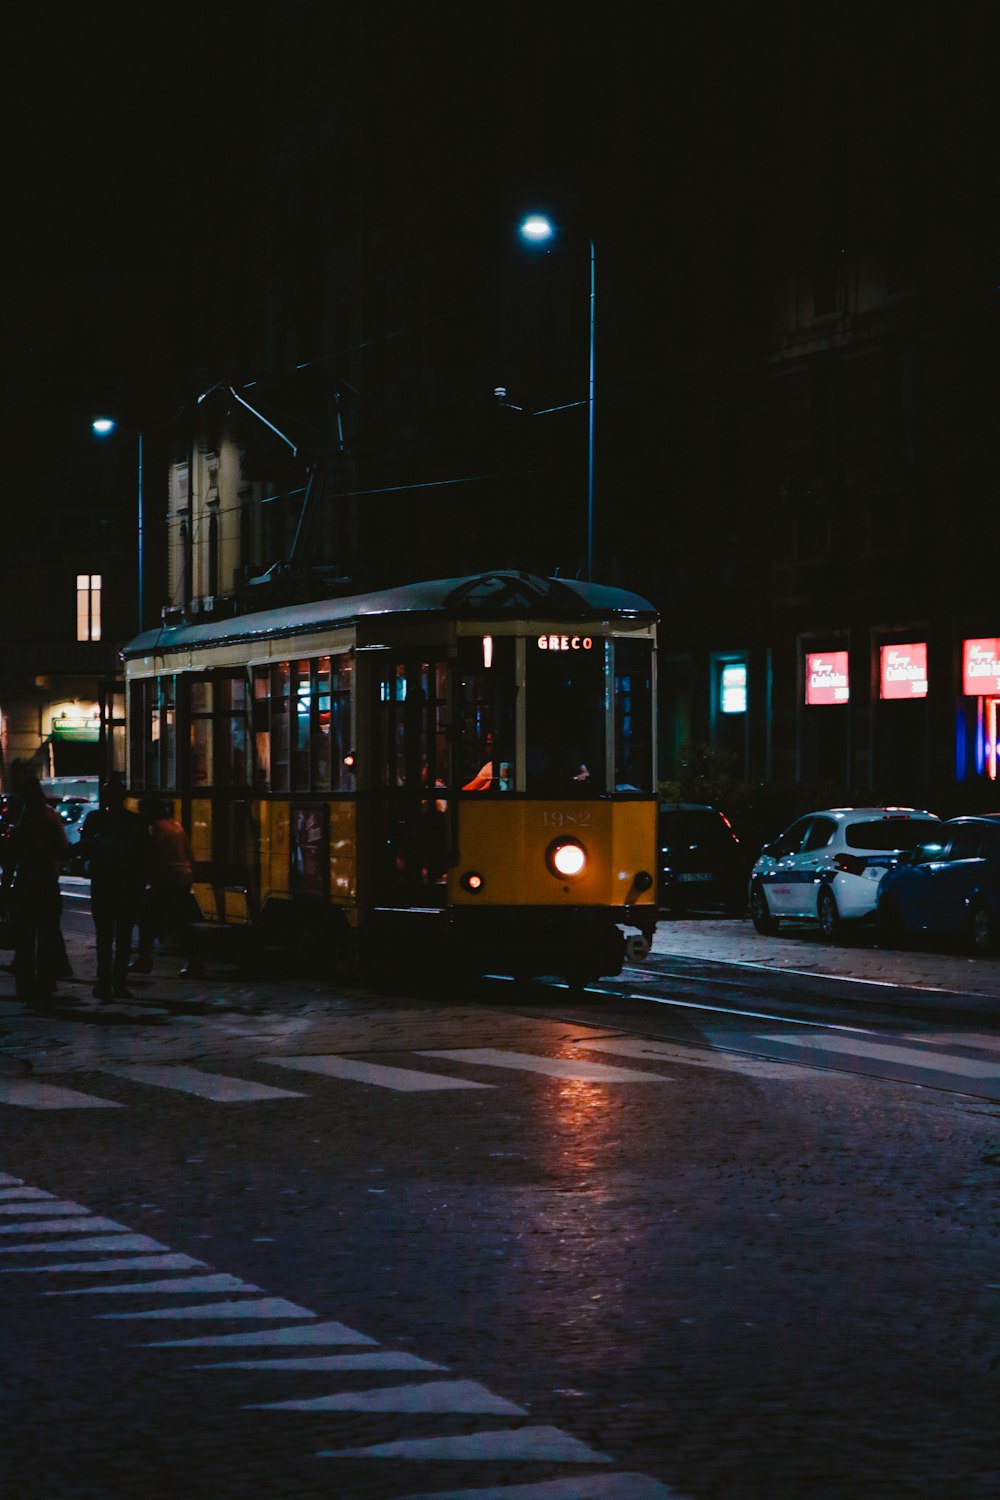 Menschen, die nachts in der Nähe des gelben Zuges stehen